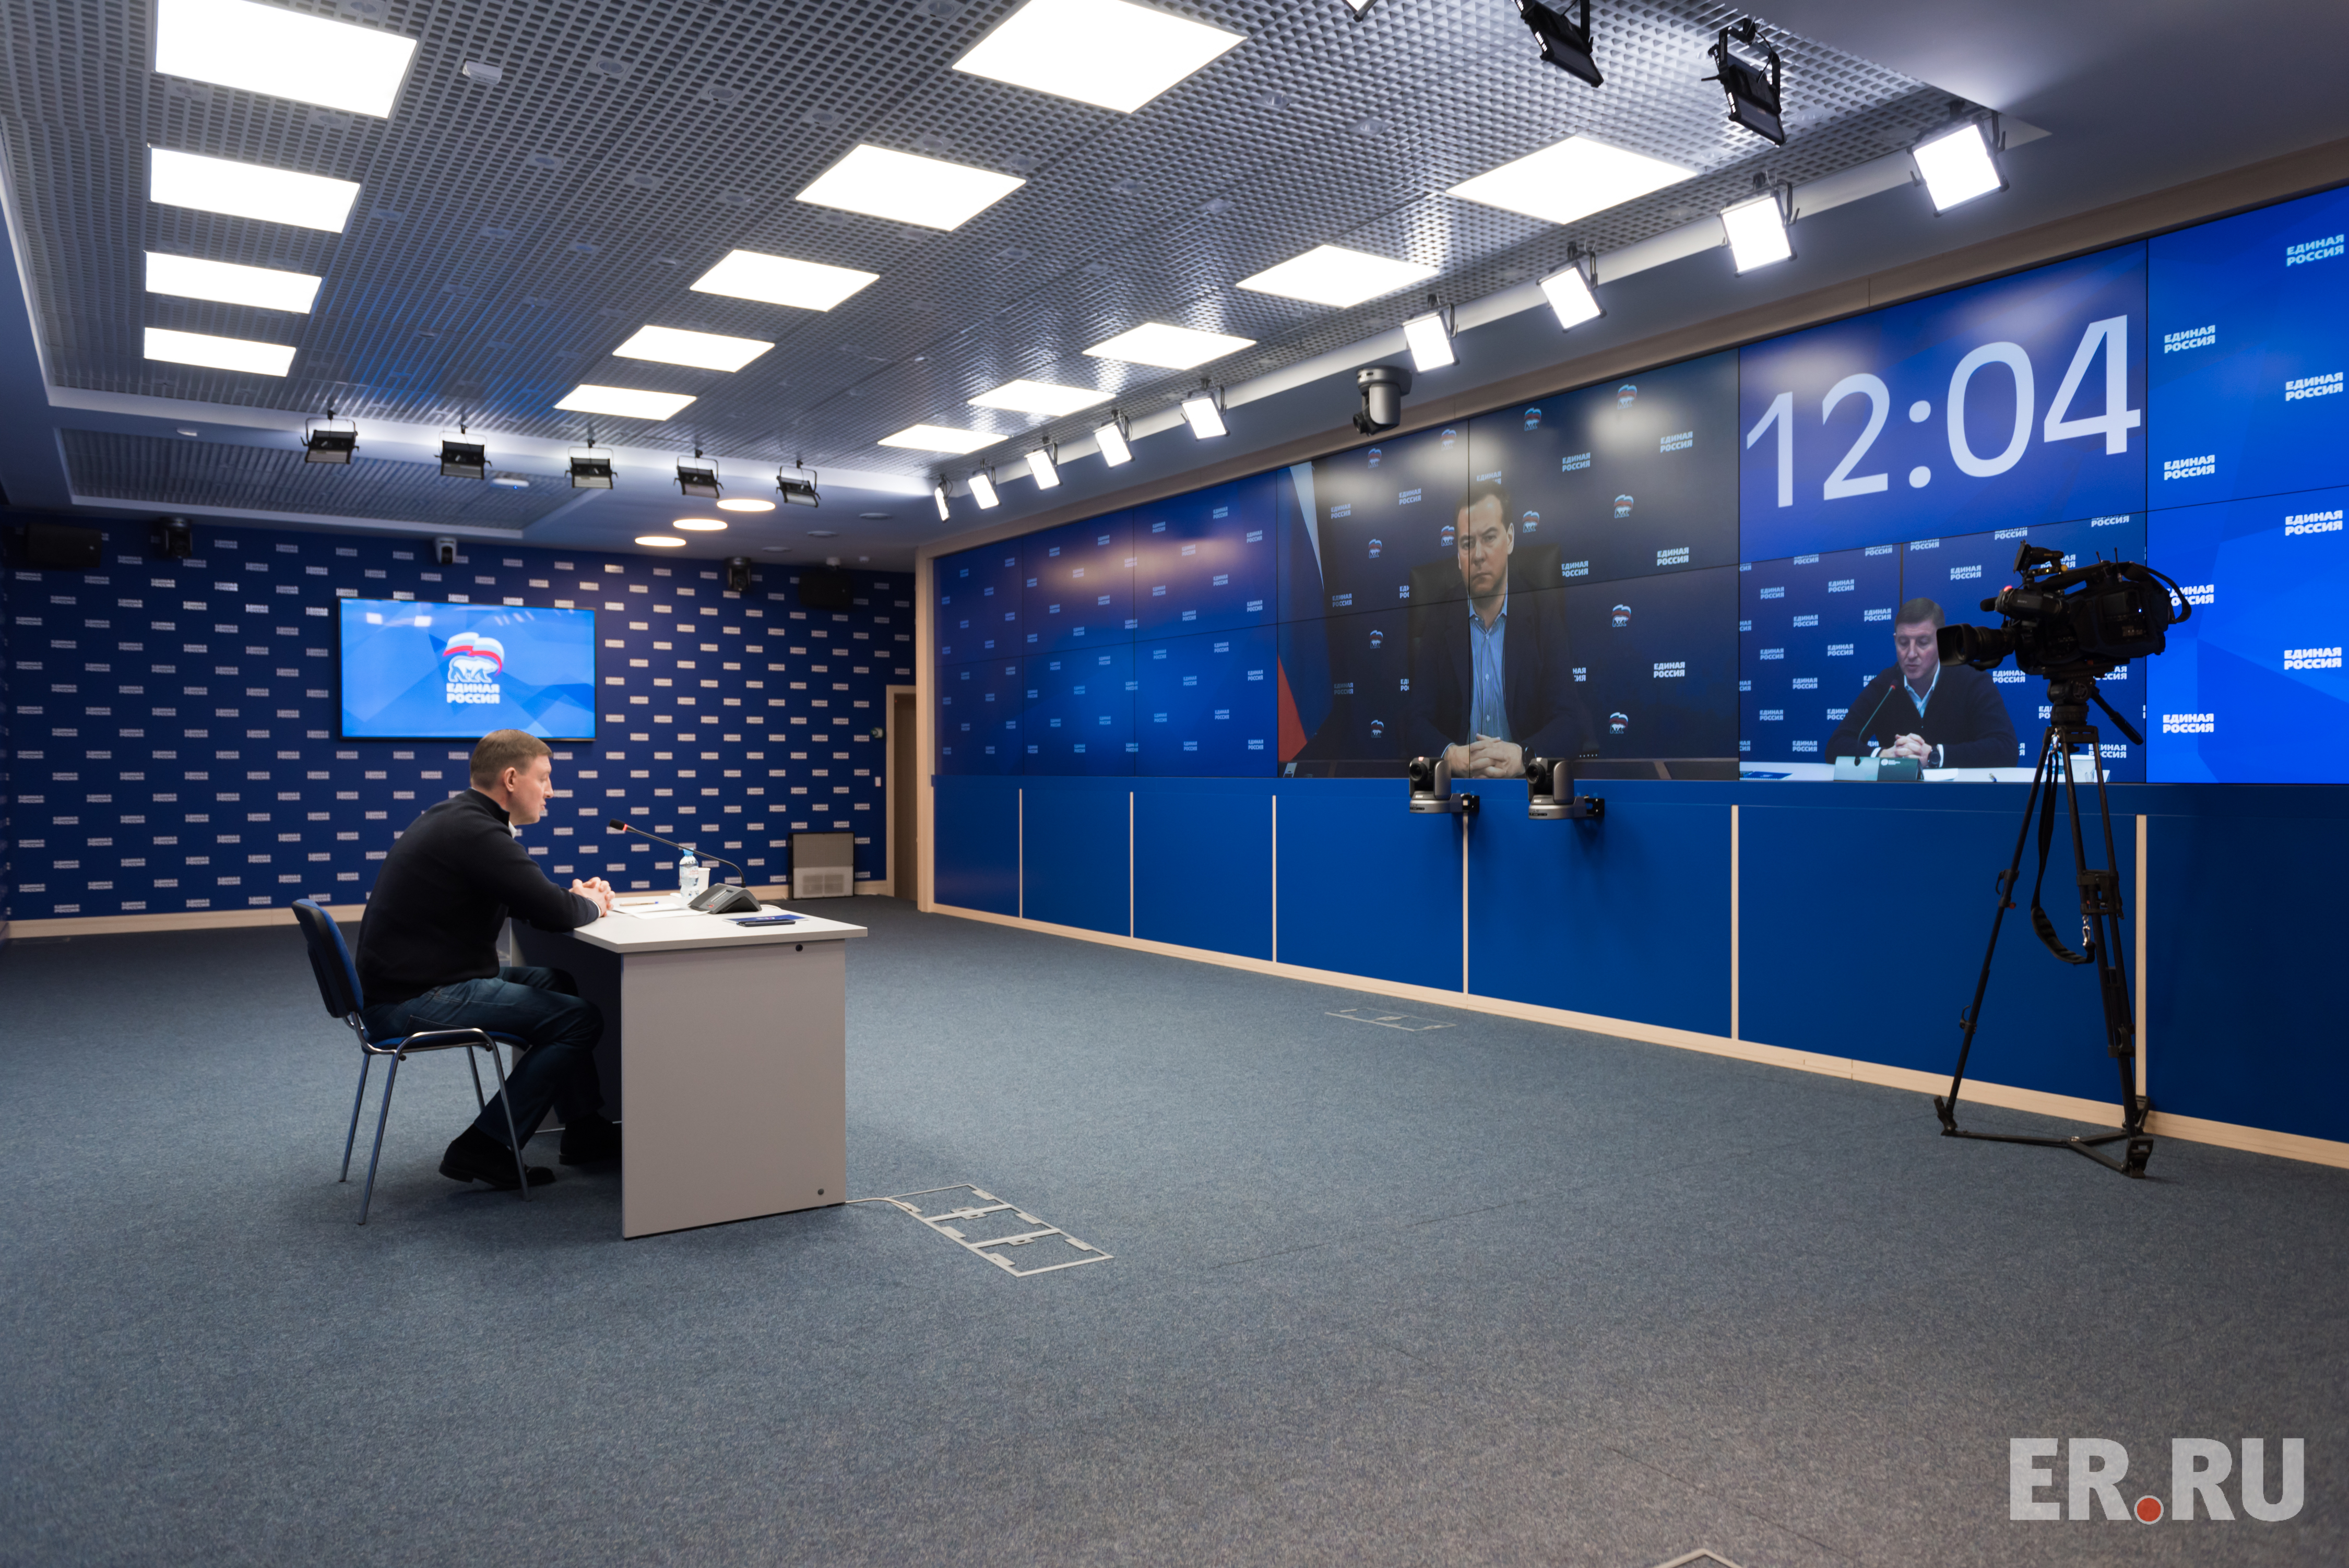 Дмитрий Медведев и Андрей Турчак обсудили готовность «Единой России» к проведению предварительного голосования